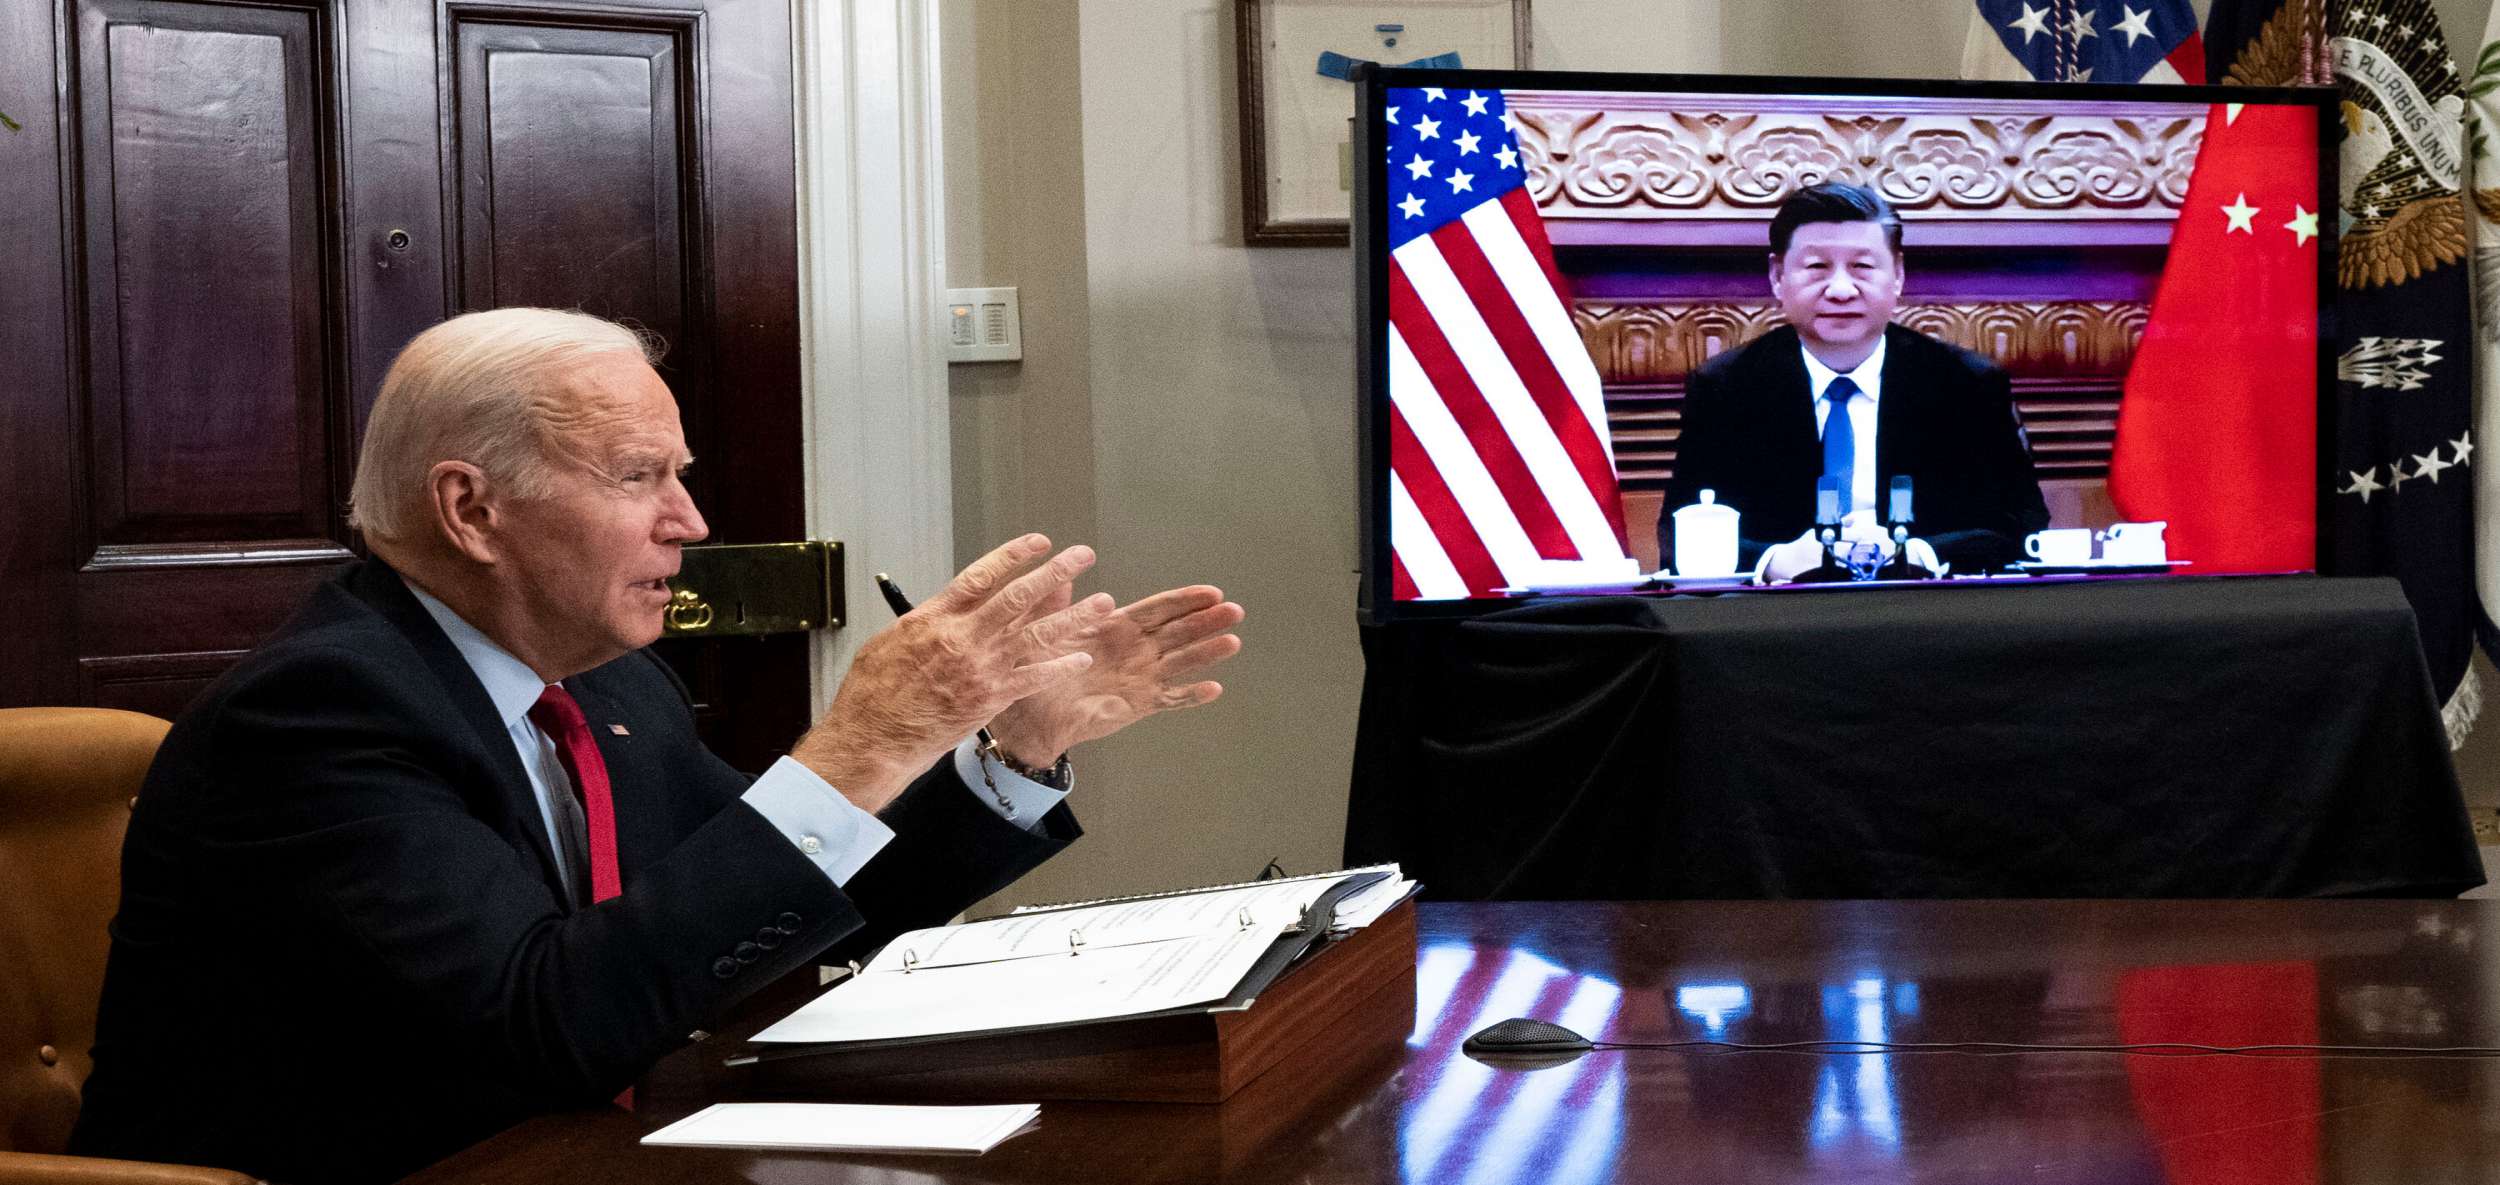 نشست مجازی روسای جمهور آمریکا و چین